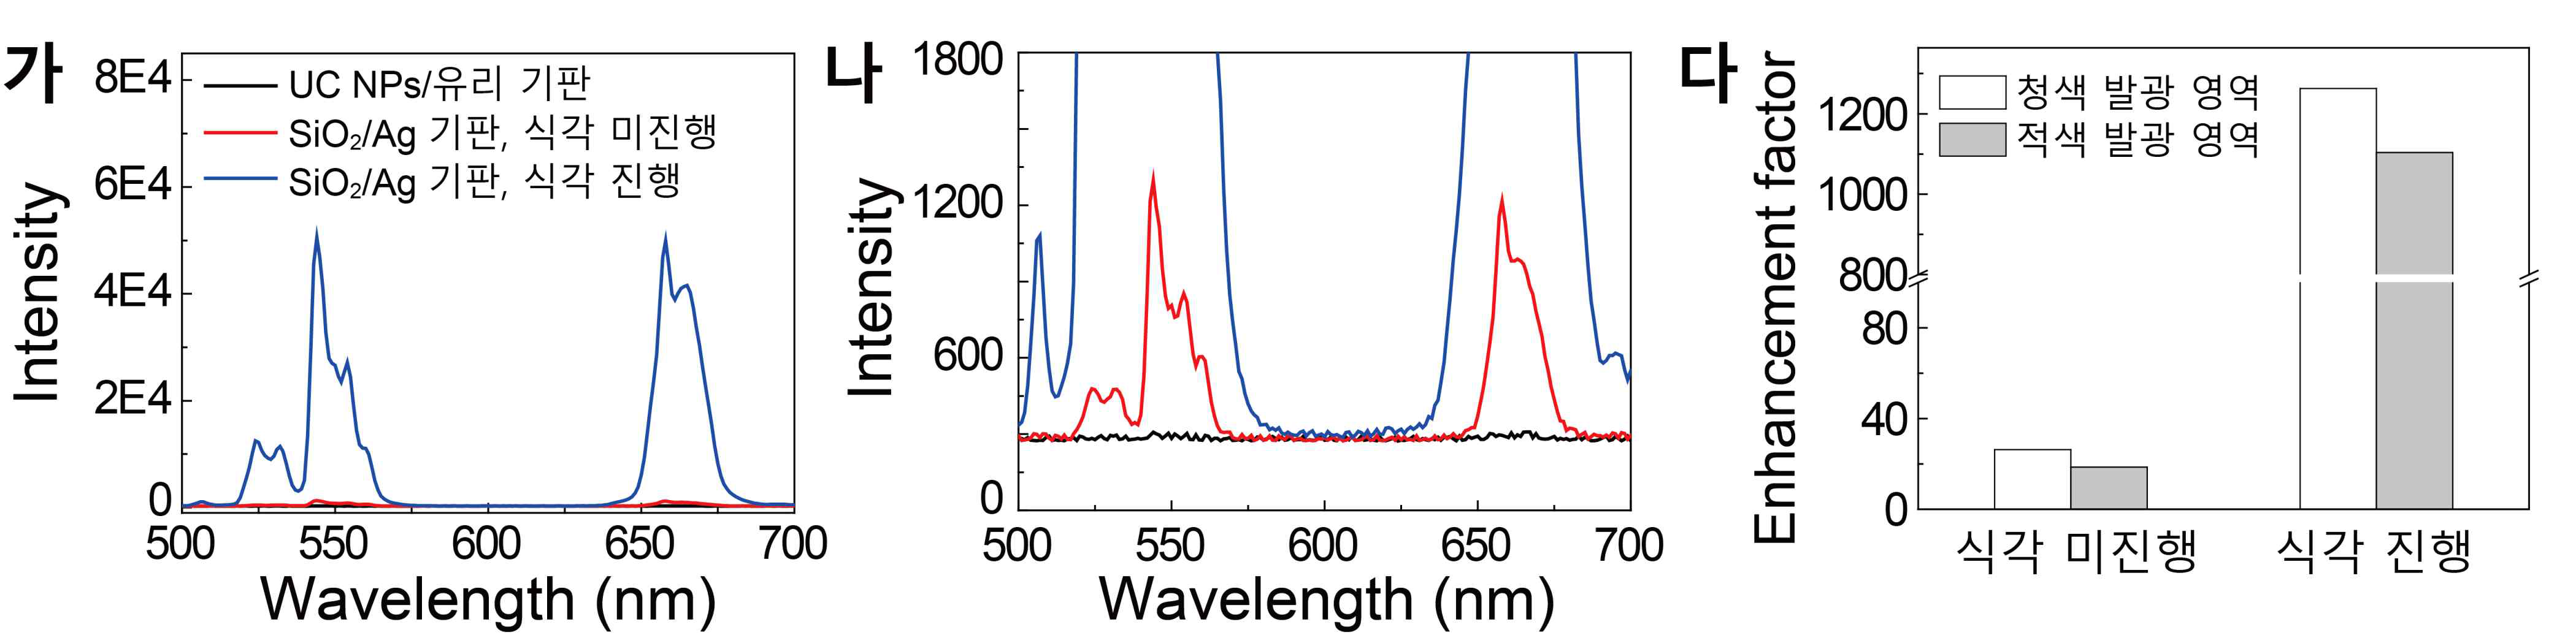 1550 nm 빛에 의한 상향 변환 발광 스펙트라. (가, 나) SiO2/Ag 기판의 식각 반응 전/후에 대한 상환 변환 발광 세기를 비교. (다) 청색 발광 영역과 적색 발광 영역에서의 발광 증대를 보여줌